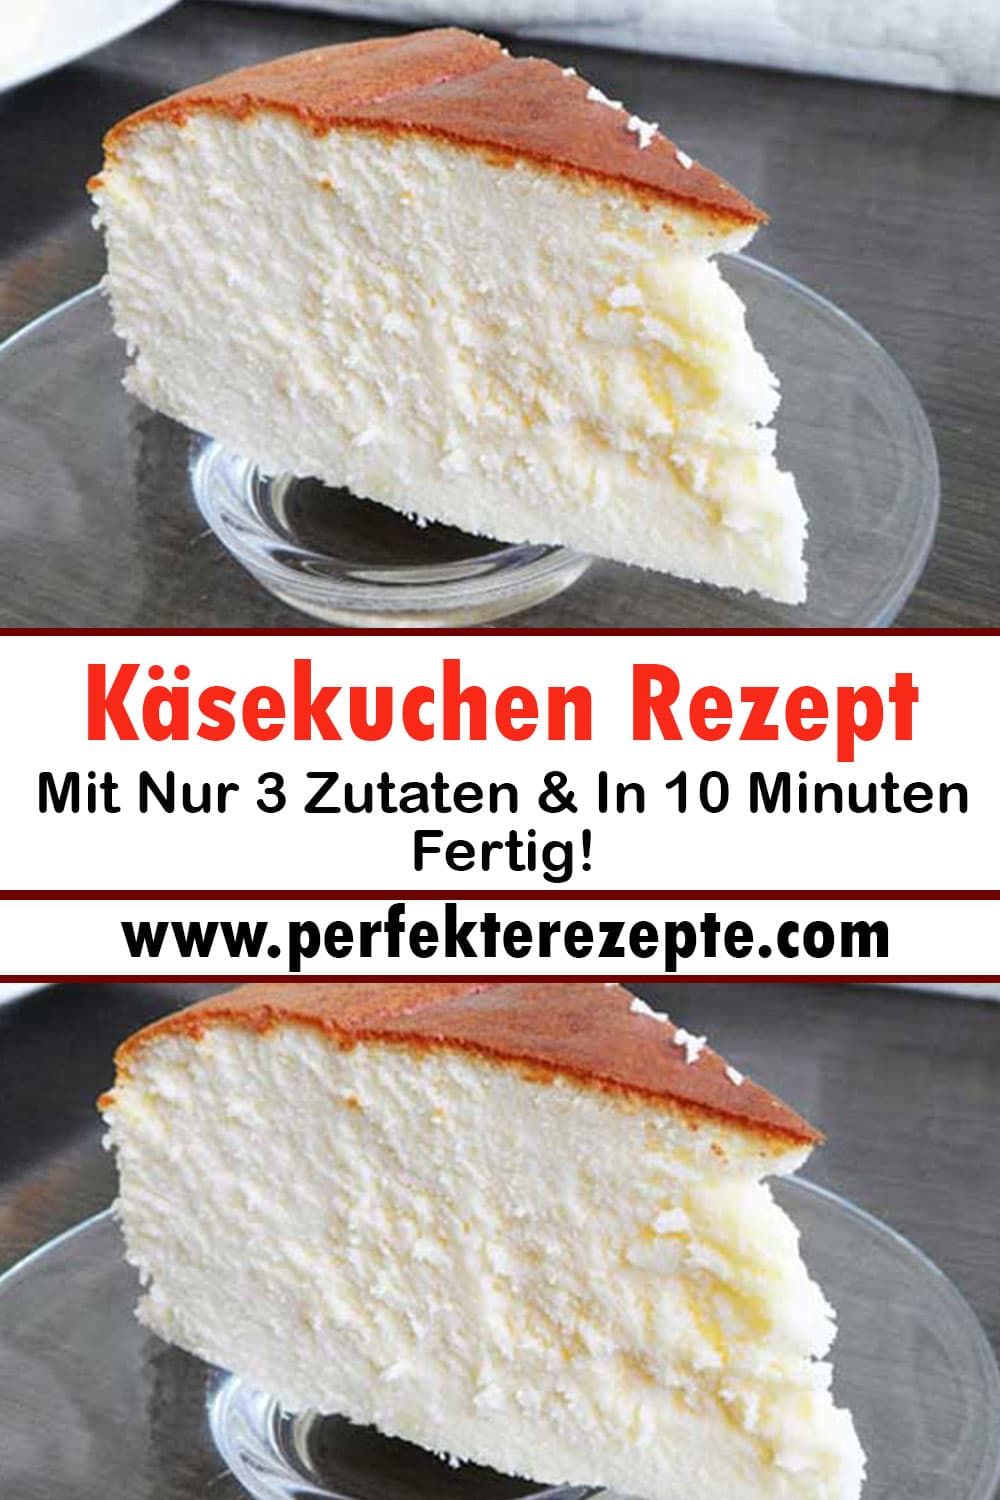 Käsekuchen Rezept Mit Nur 3 Zutaten & In 10 Minuten Fertig!